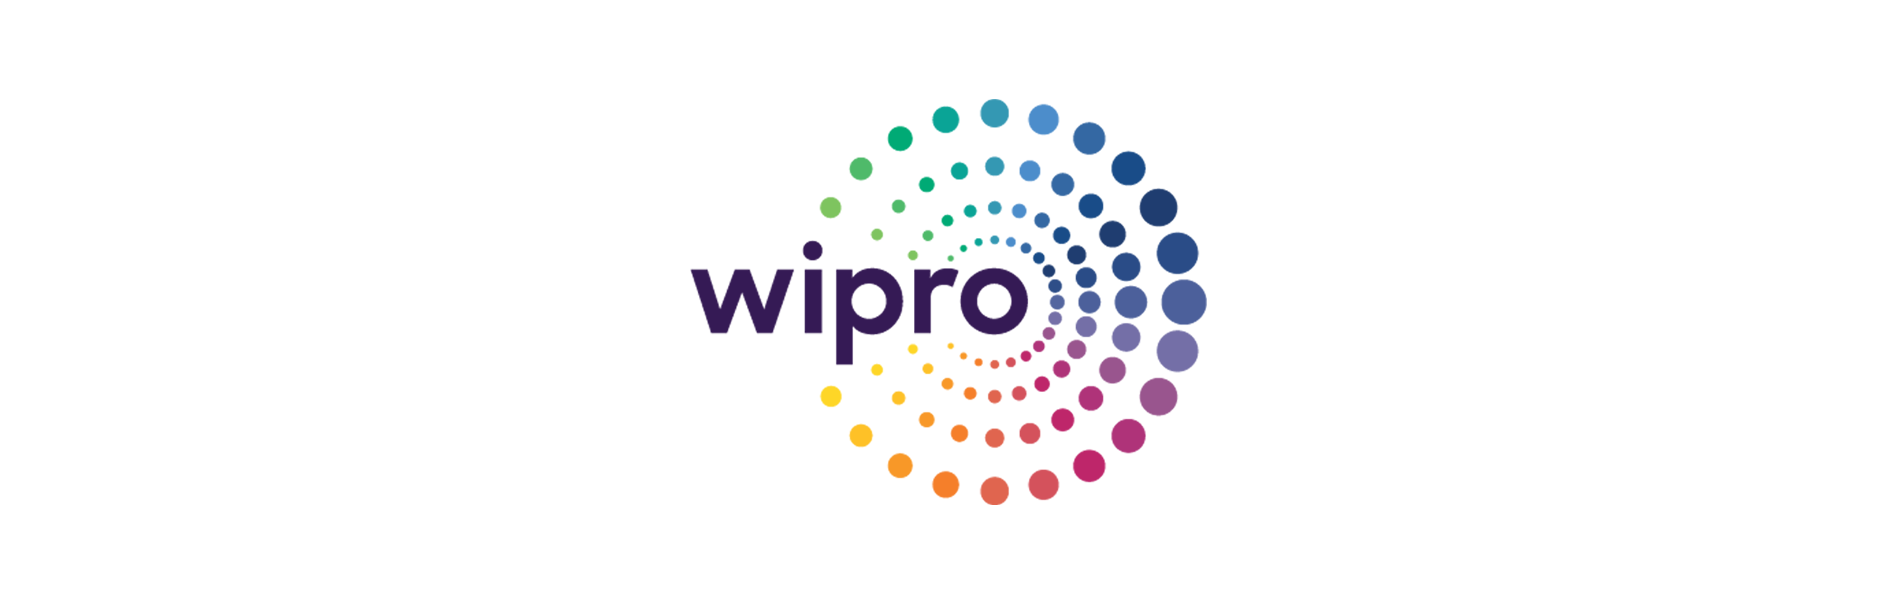 wipro company history